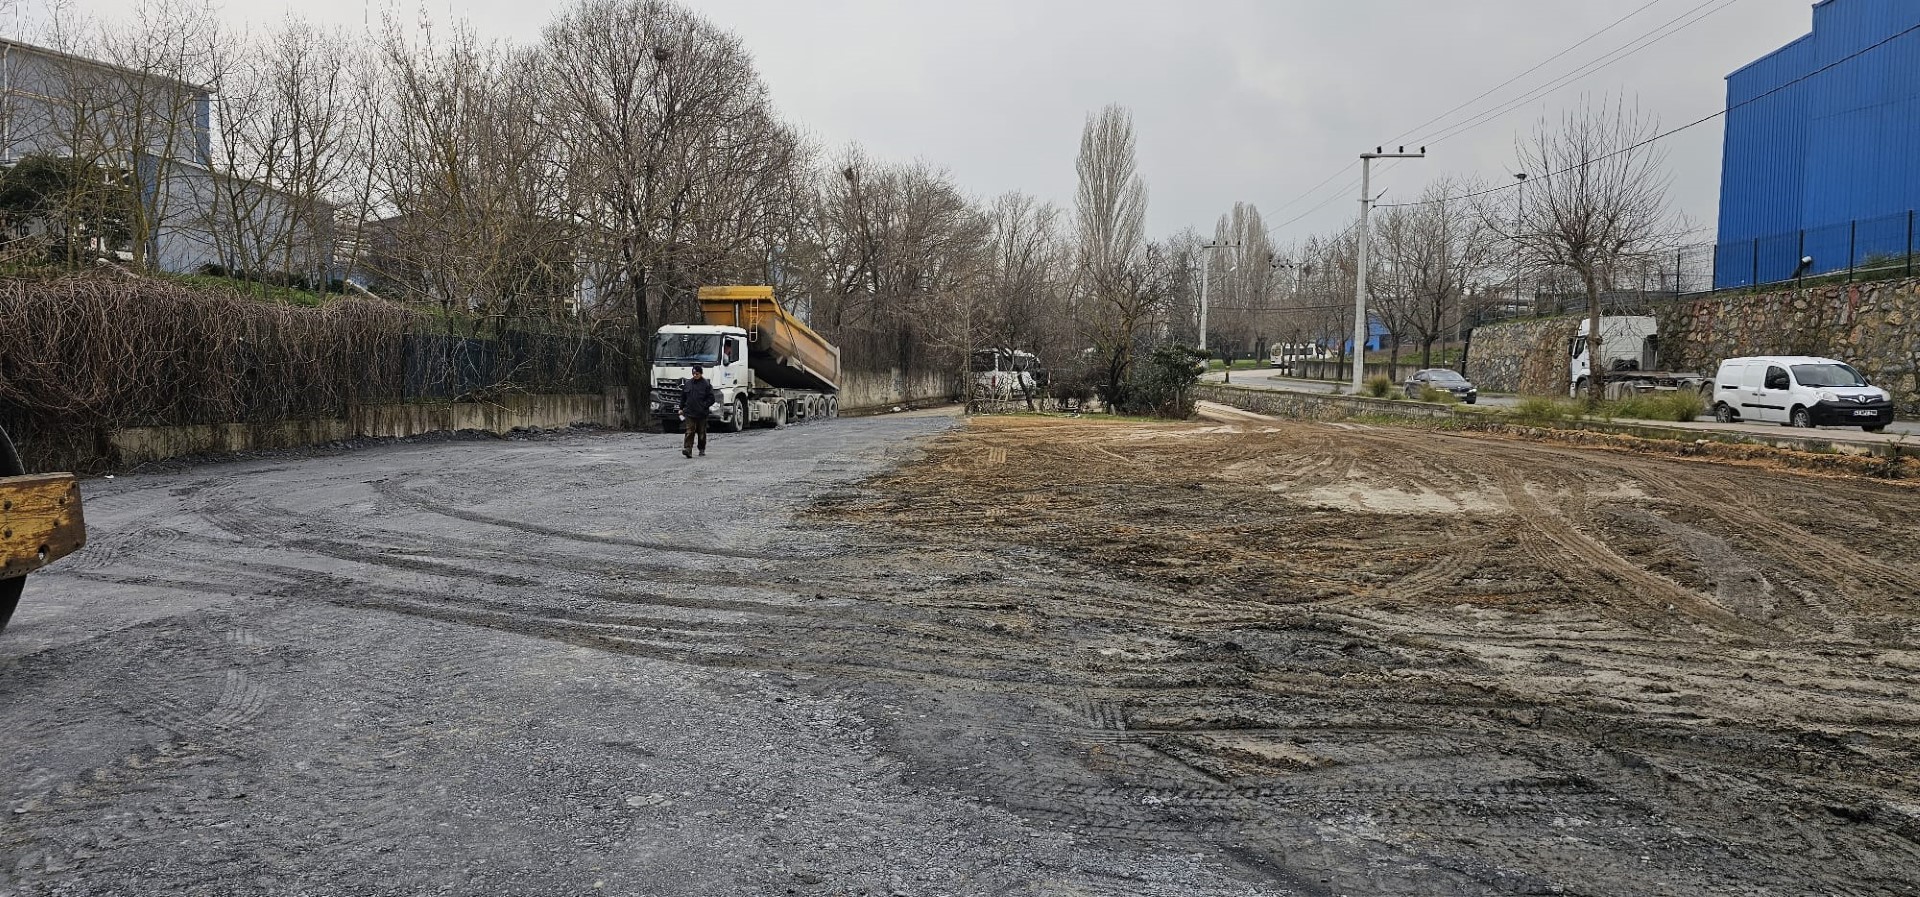 Kocaeli Büyükşehir Belediyesi, Gebze Köy Minibüsleri İçin Yeni Terminal İnşa Ediyor: Toplu Ulaşım İmkanları Güçleniyor